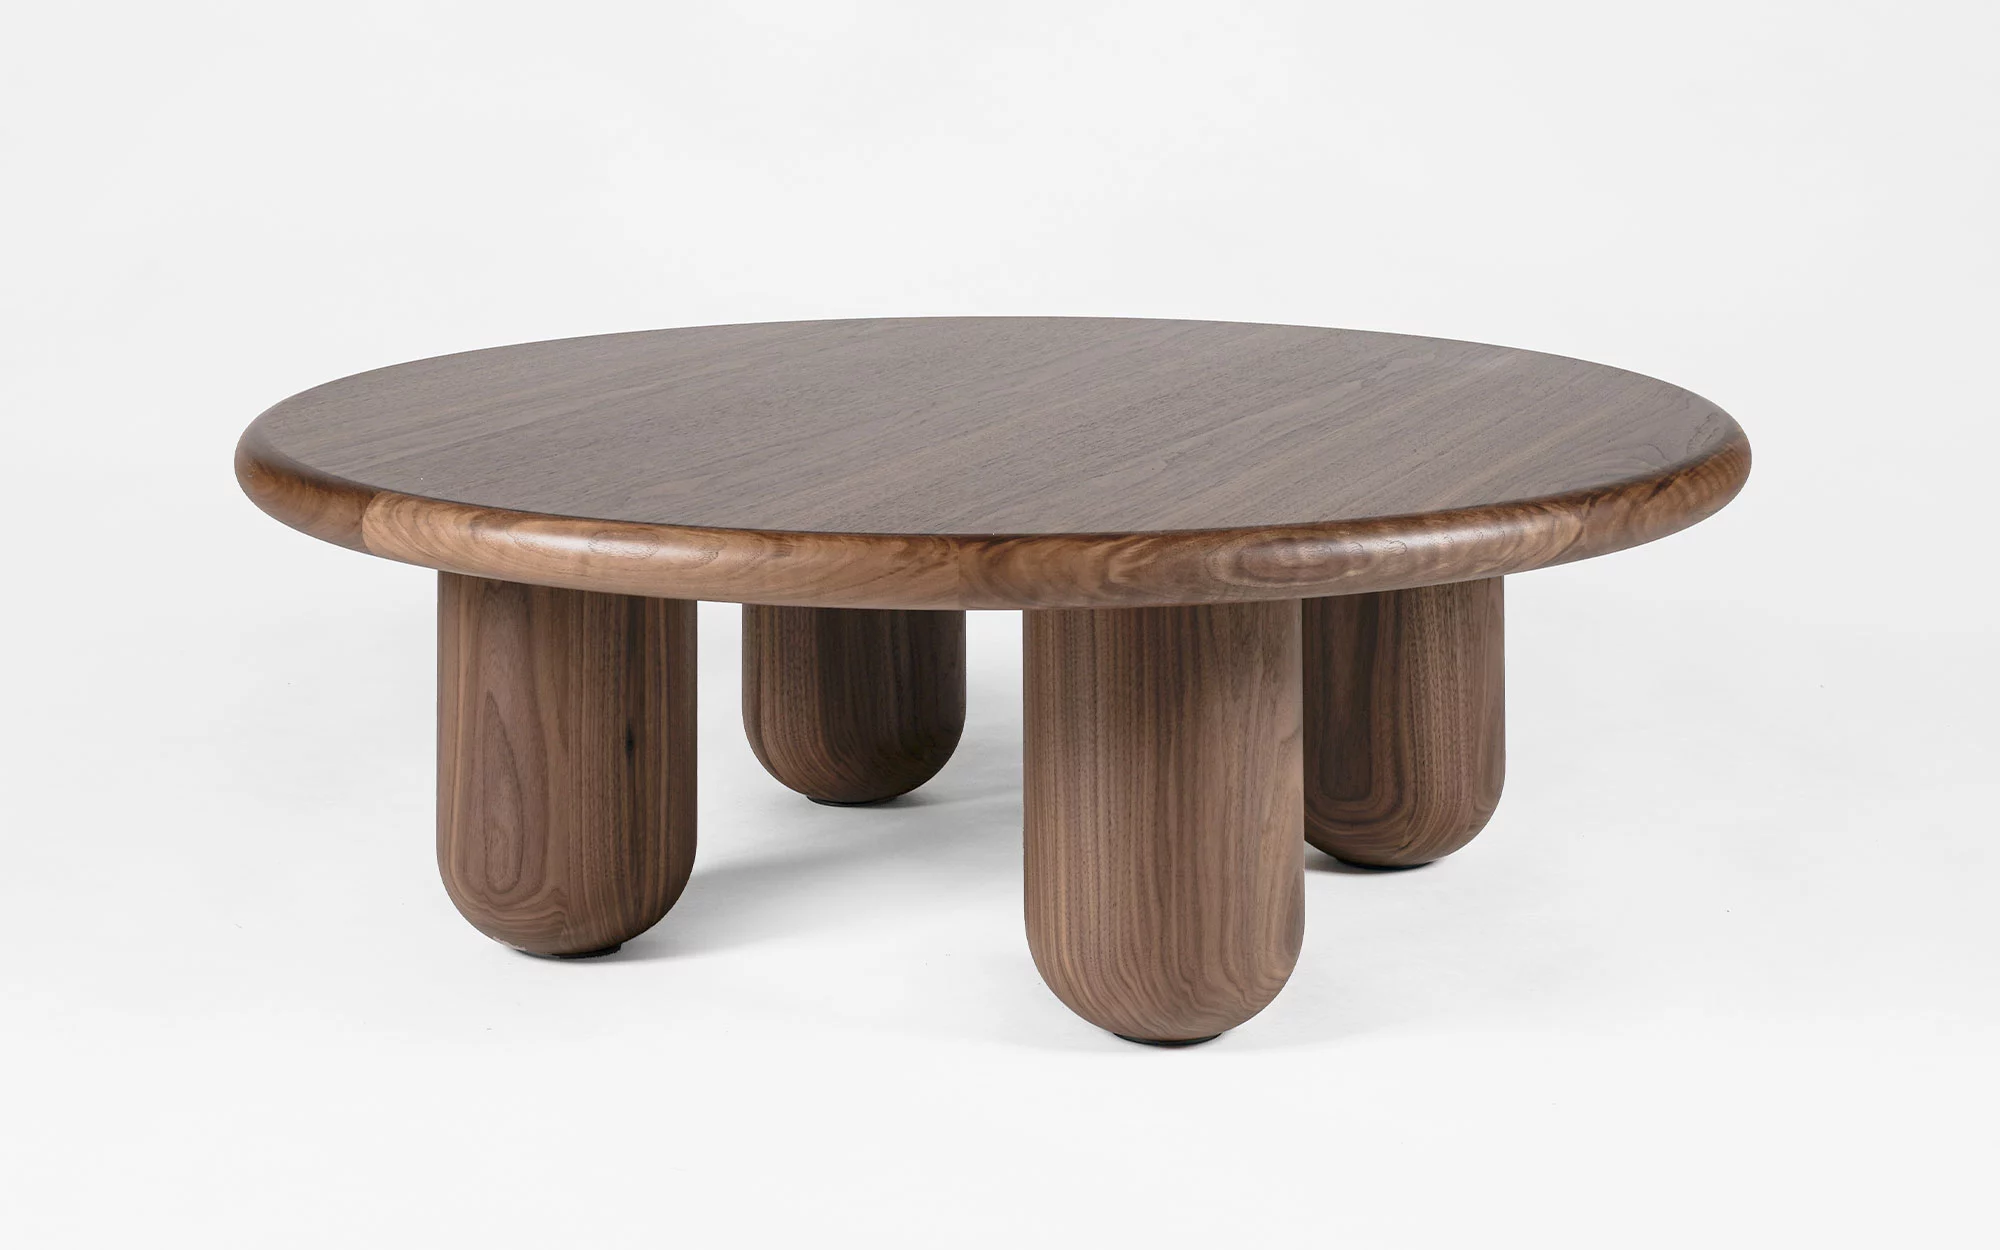 Organism coffee table - Jaime Hayon - Vase - Galerie kreo